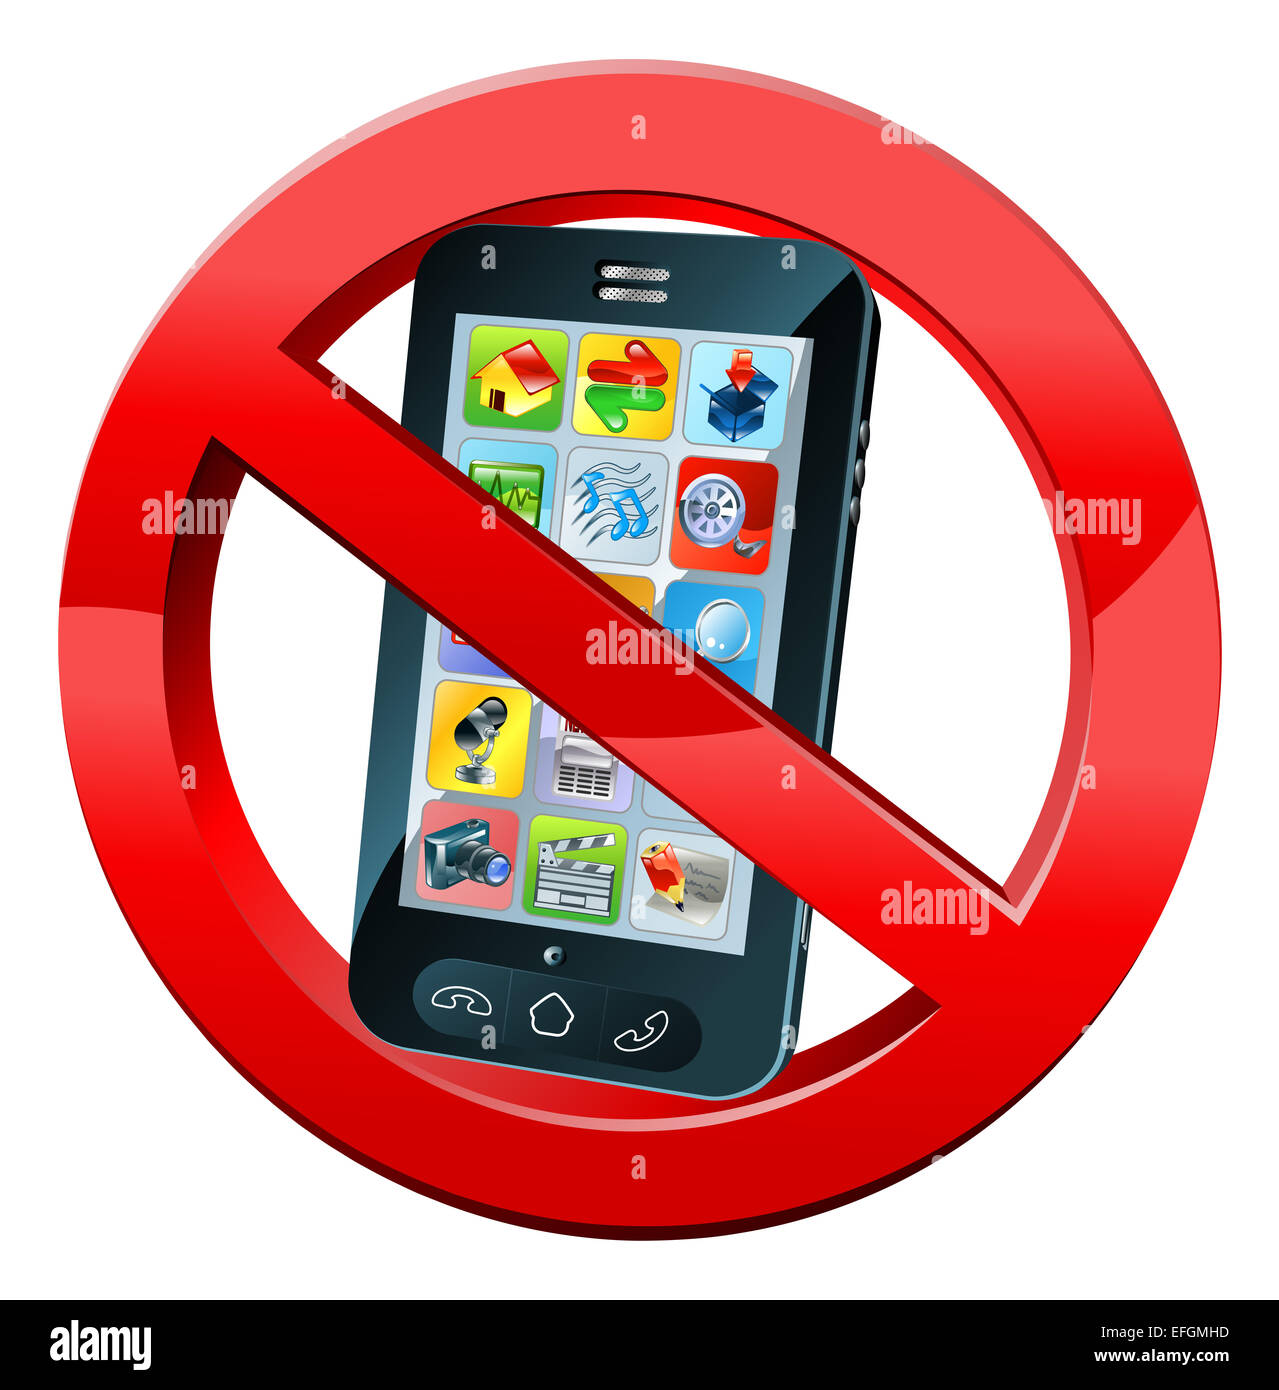 Le téléphone portable n'est pas autorisé à utiliser le vecteur de signe.  Éteignez les téléphones portables. Idéal pour les arrière-plans, le fond, l' autocollant, le signe, le symbole, l'étiquette, l'affiche, la bannière,  l'avis